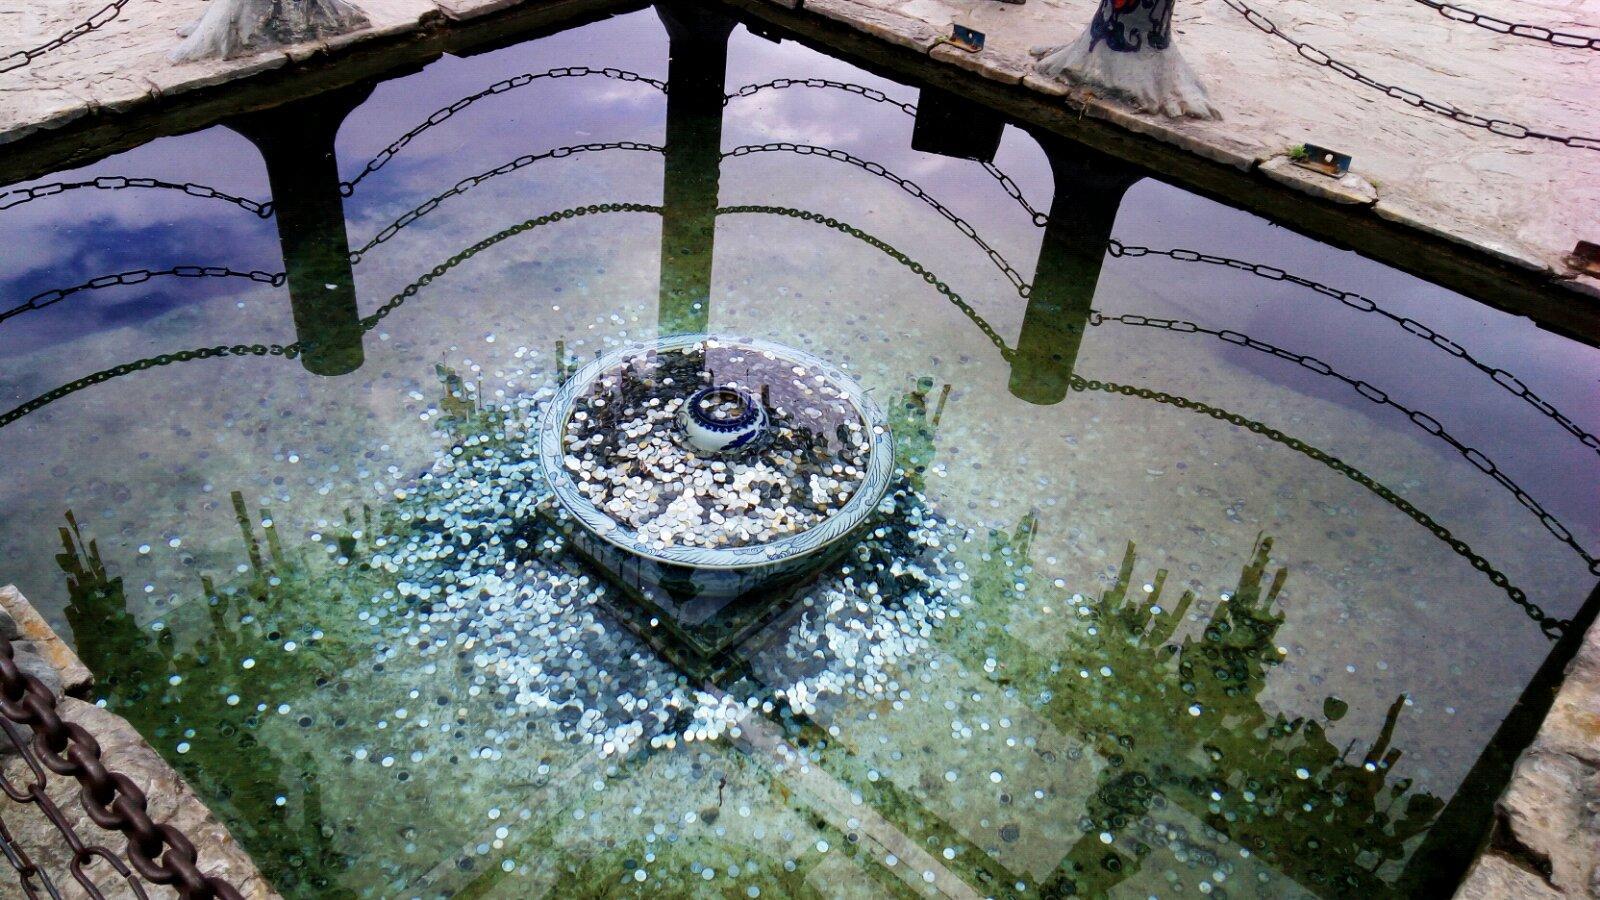 为了不污染水源,专门做了个许愿池,人们扔硬币以求平安